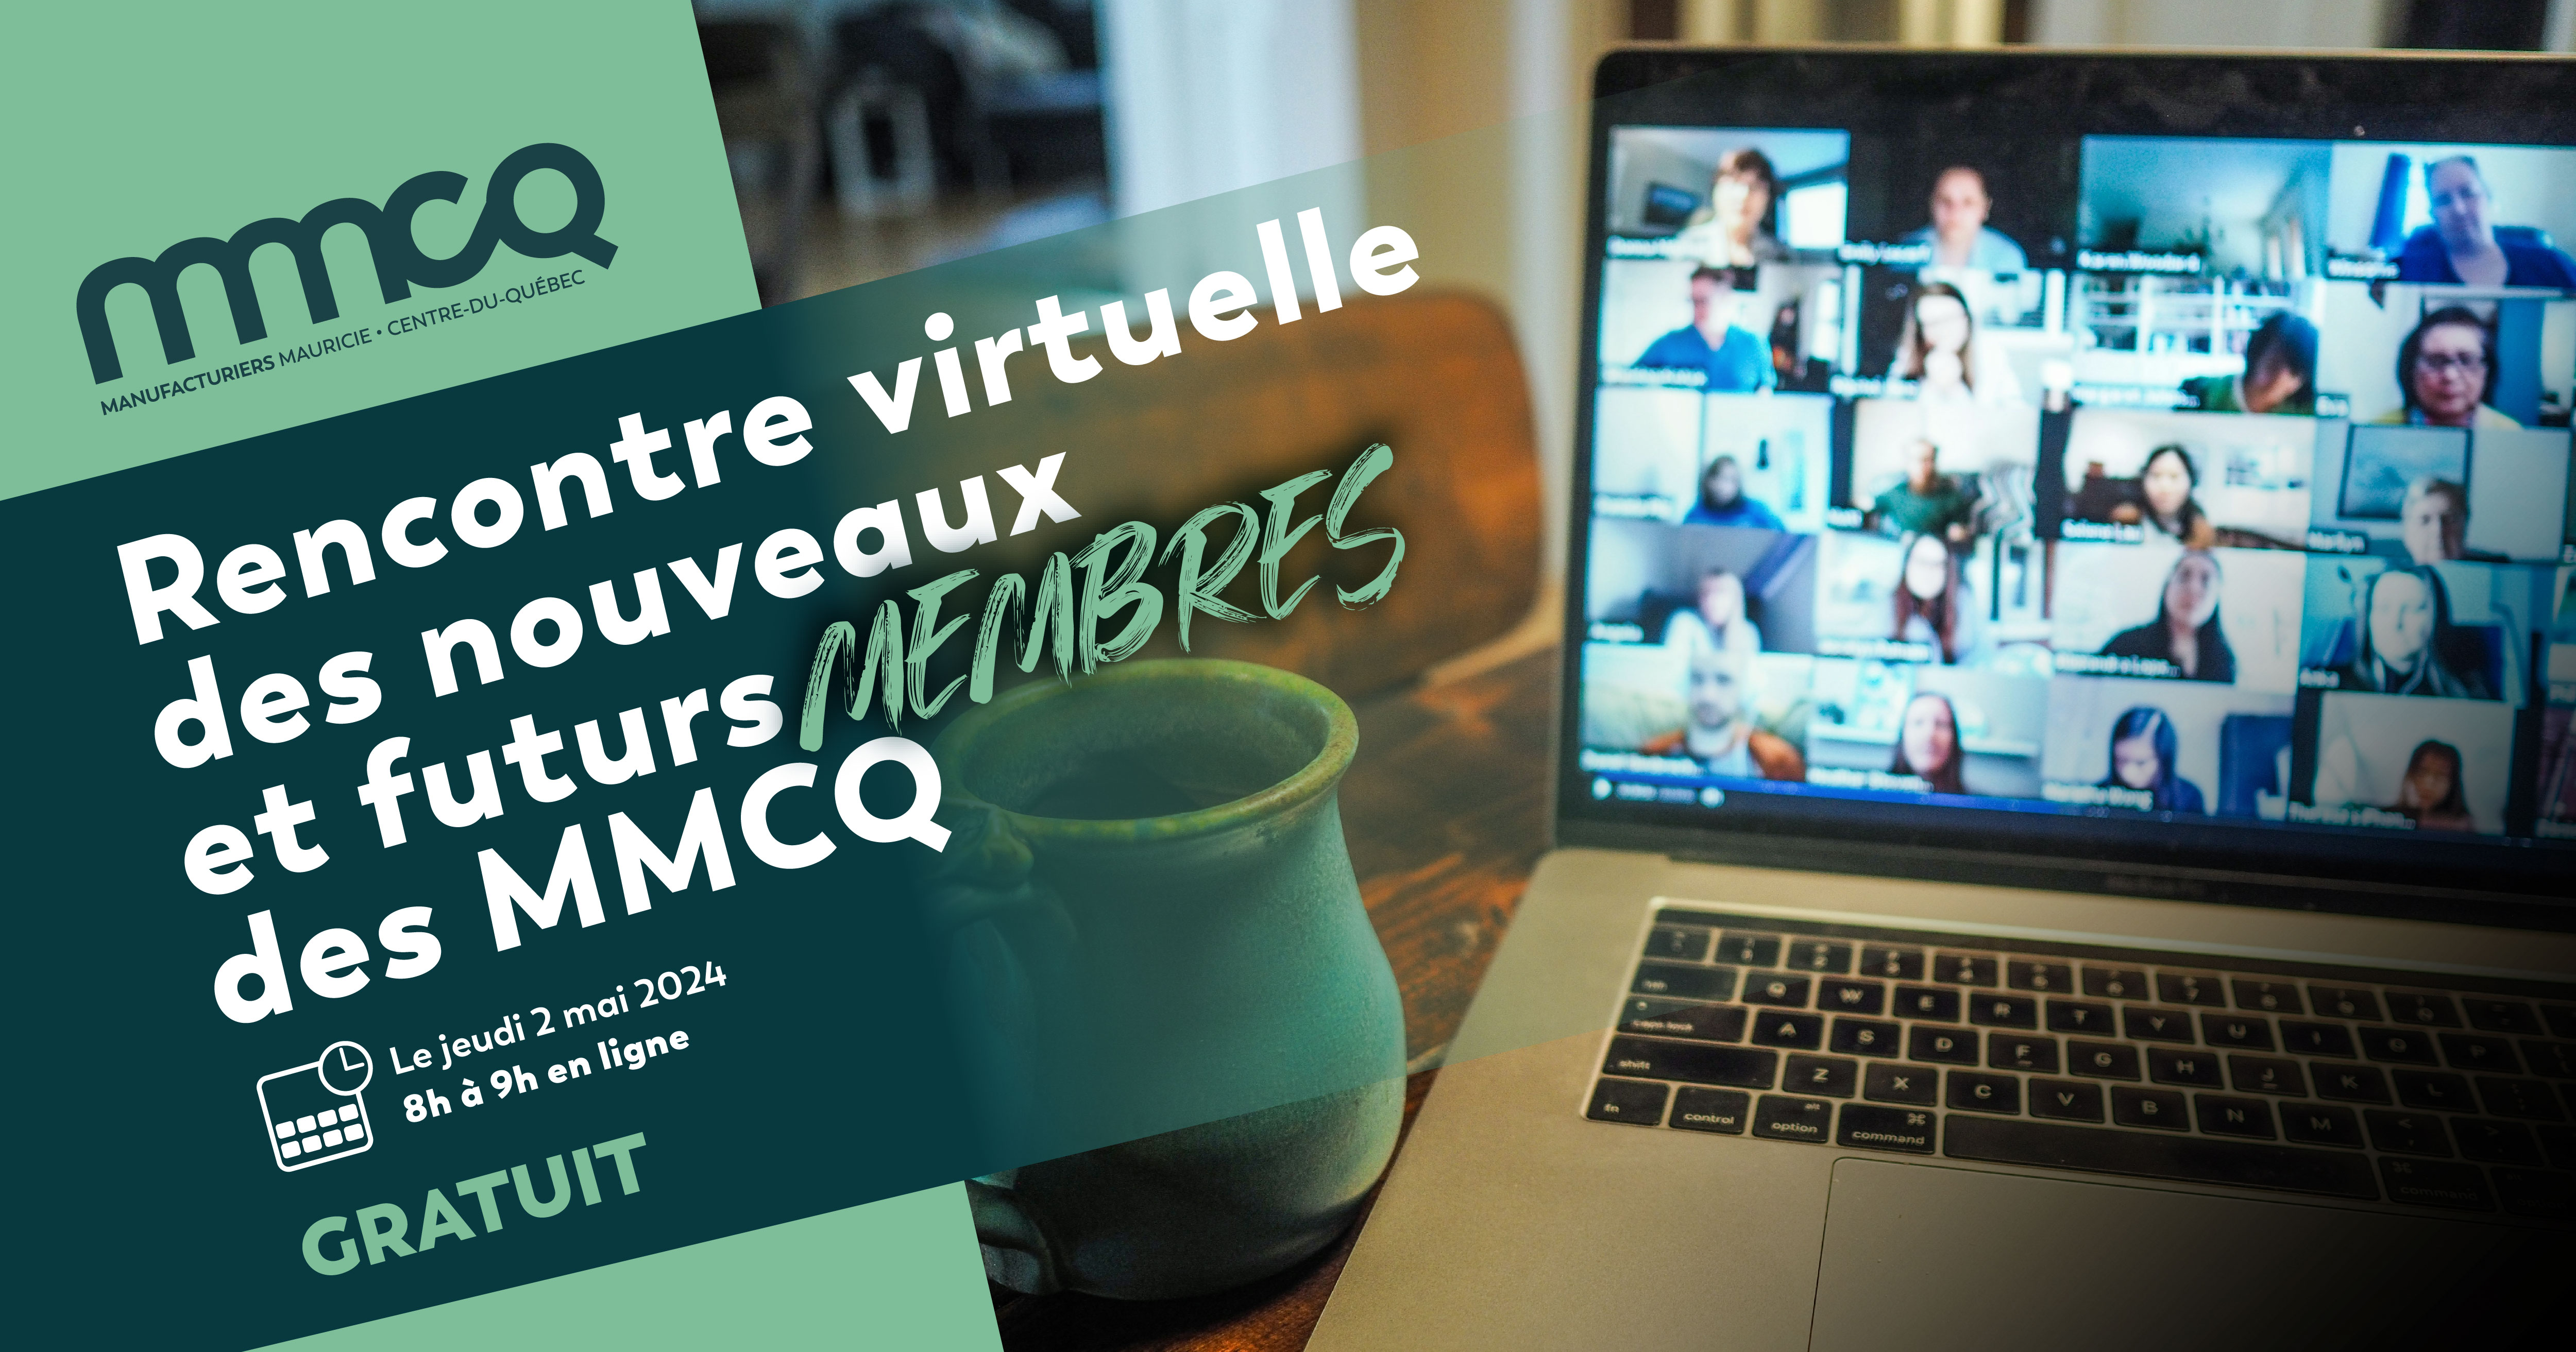 Rencontre virtuelle des nouveaux et futurs membres des MMCQ